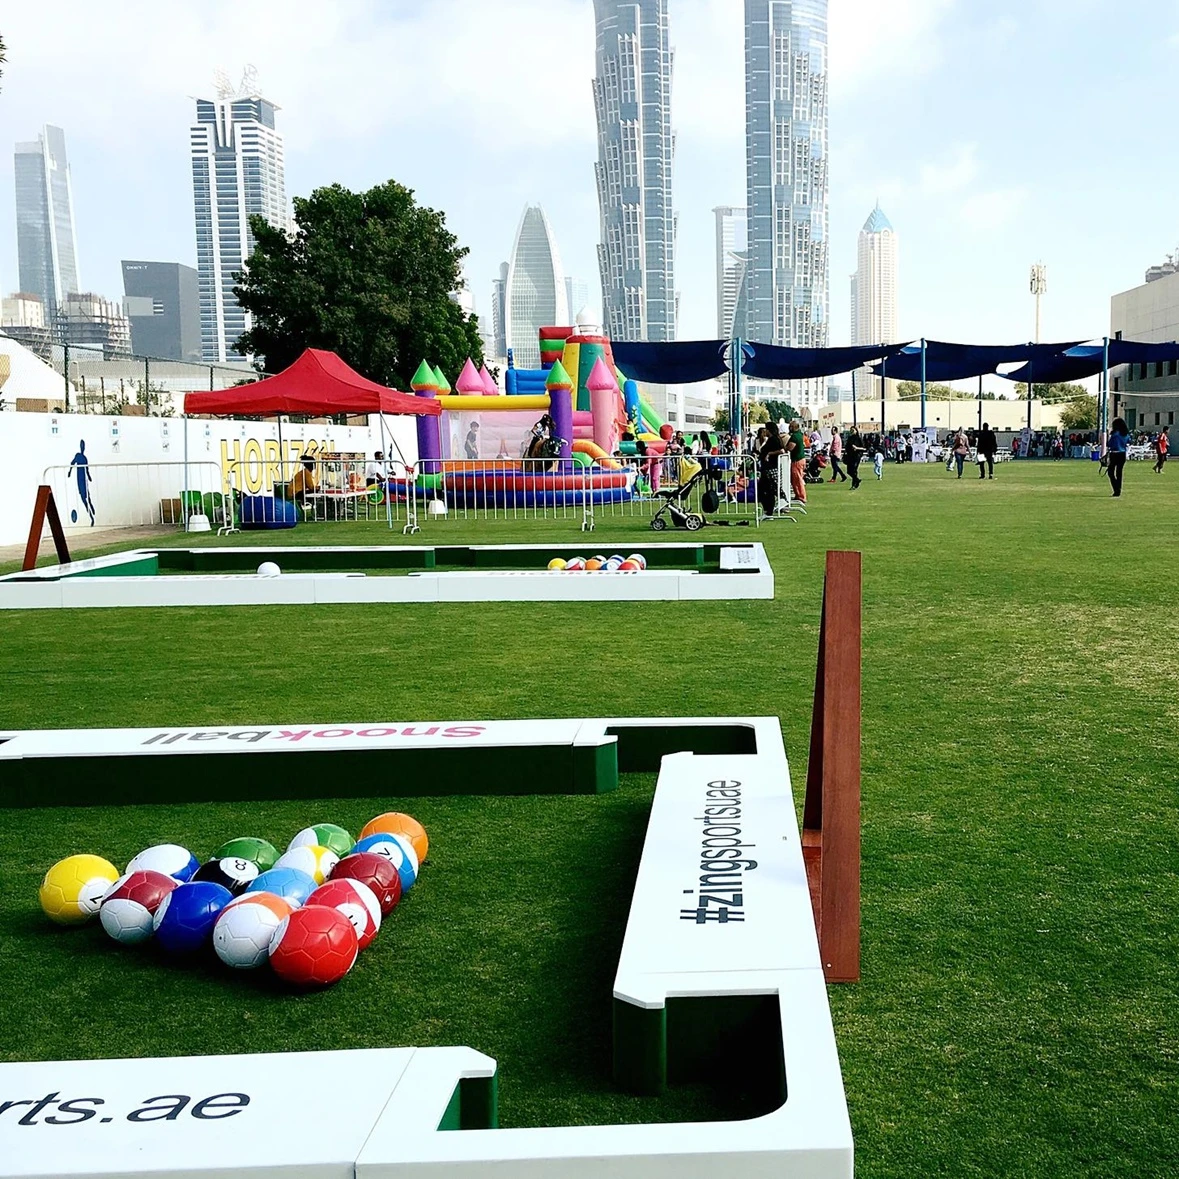 Lower snookball table/snooker soccer ball fancy soccer game filed sport game,mini football playground